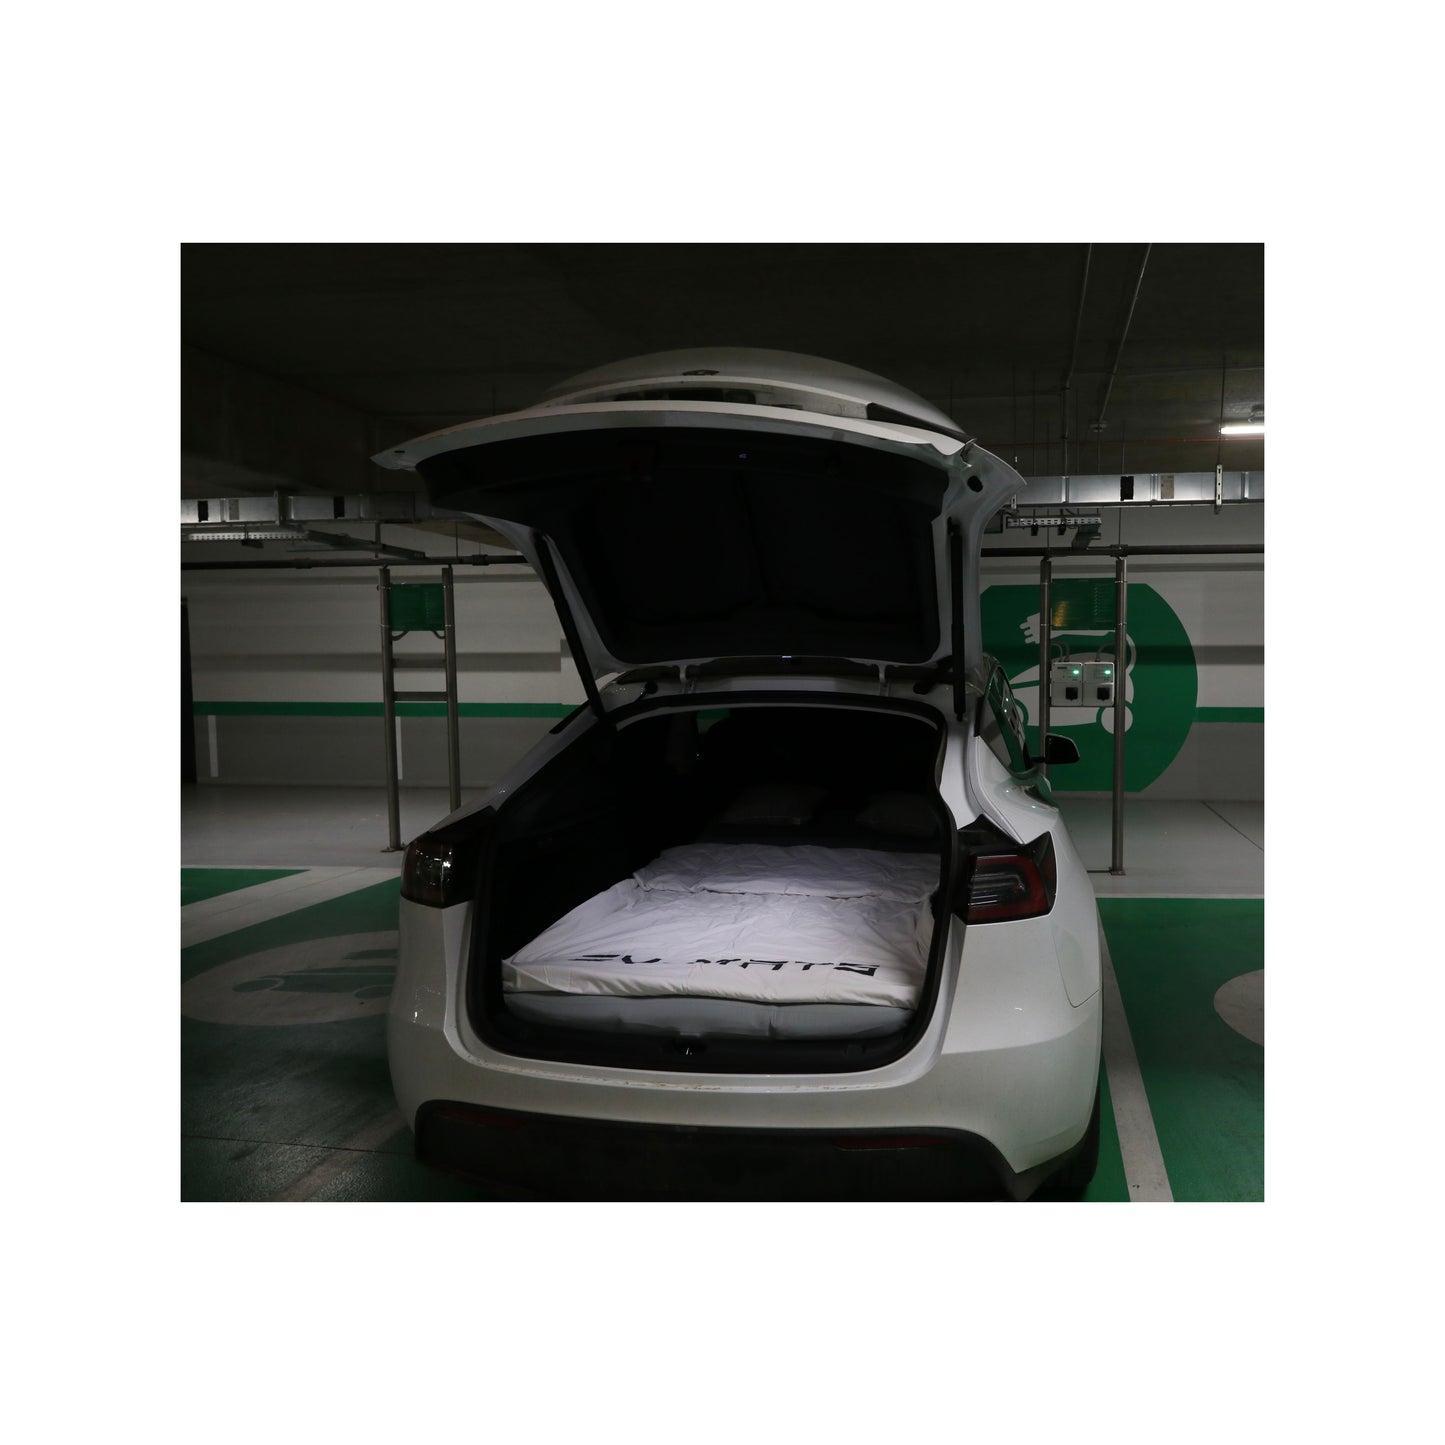 EV-MATS Basic CAMP SET til Tesla Model 3 inkluderer Tesla-madrassen, den vandtætte taske, der passer ind i bagagerummet på Tesla Model 3, et lagen, en dyne, 2 puder og et pudebetræk